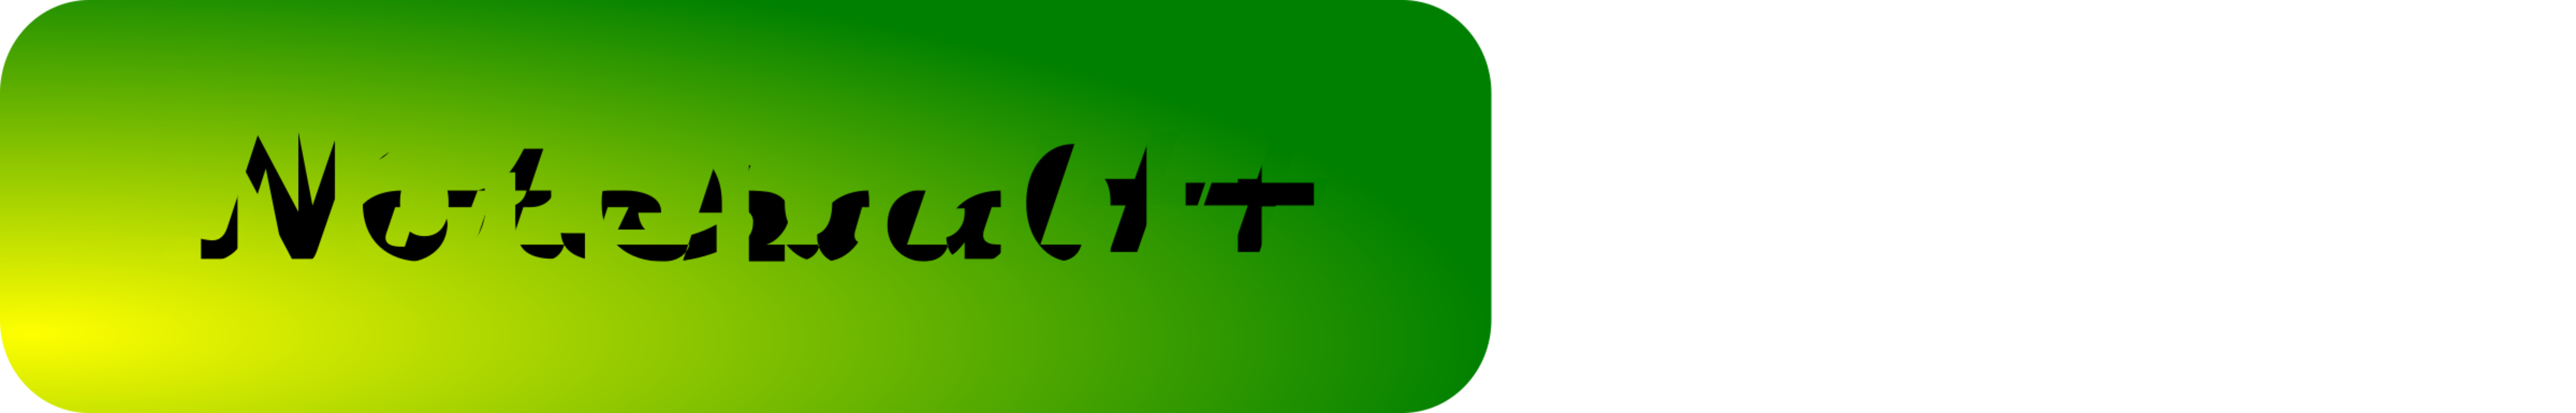 Text,Symbol,Green